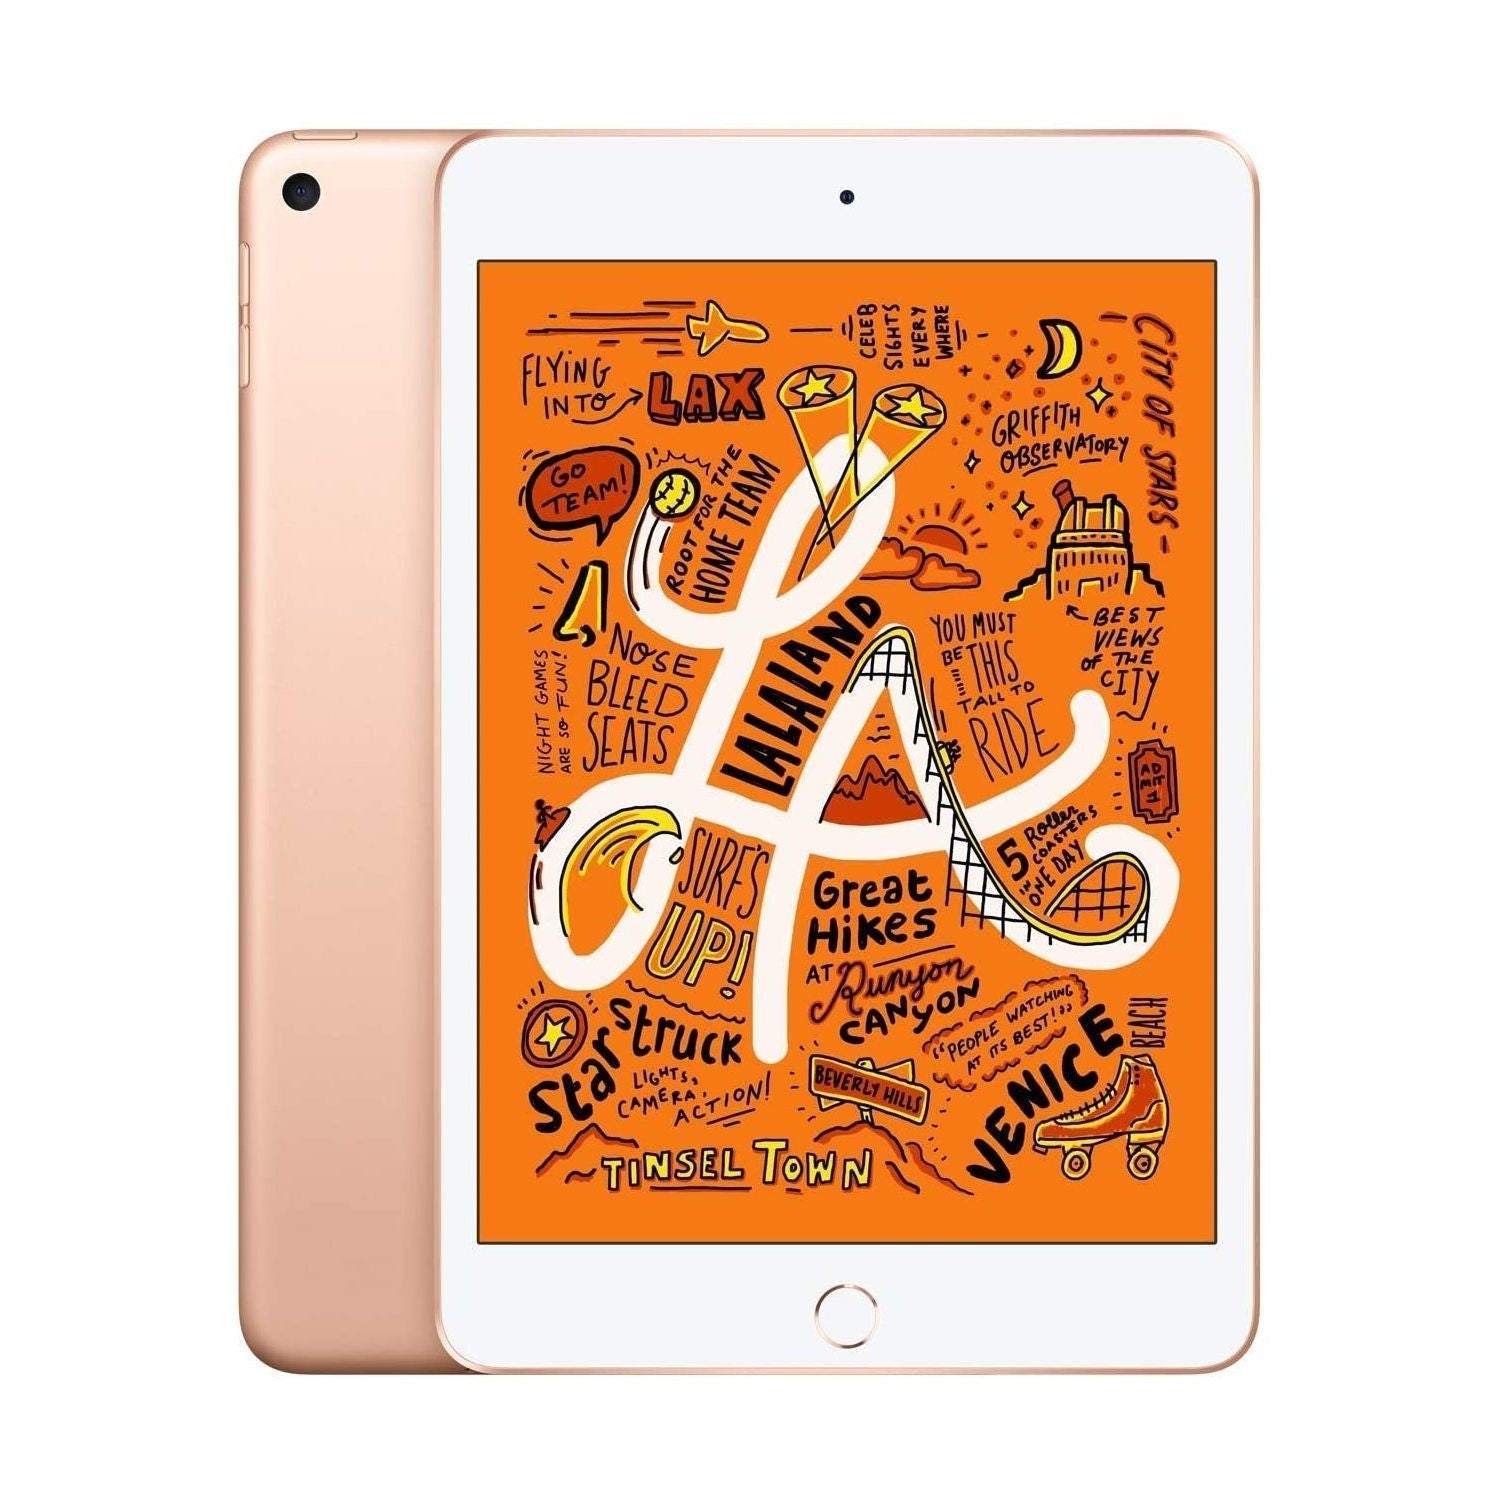 2019 Apple iPad Mini 5 Wi-Fi, 64GB, Gold (MUQY2B/A) - Refurbished Good